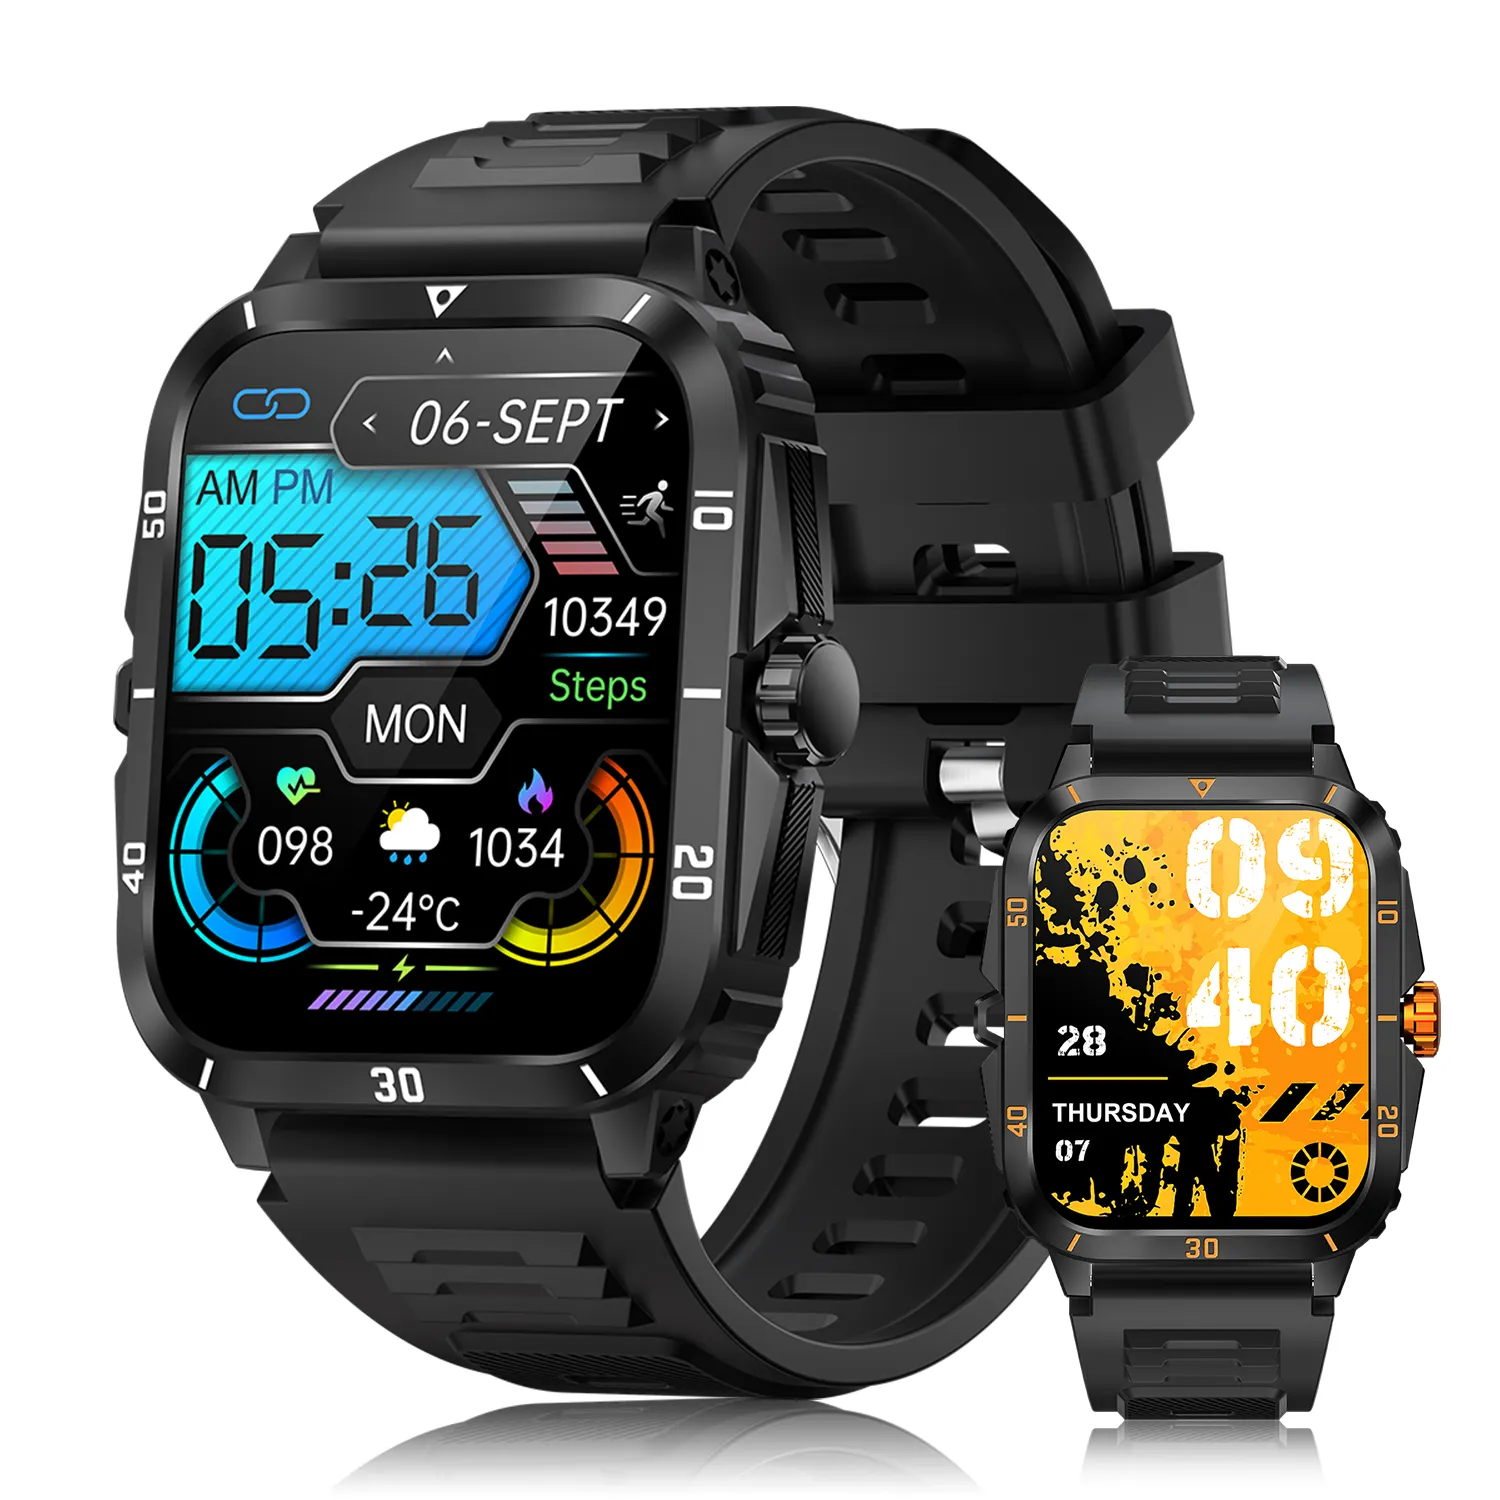 Großhandel Outdoor Smart Watch für Männer VKT71 Tragbare Geräte Reloj Inteli gente BT Call 3ATM Wasserdichte digitale Sport uhr